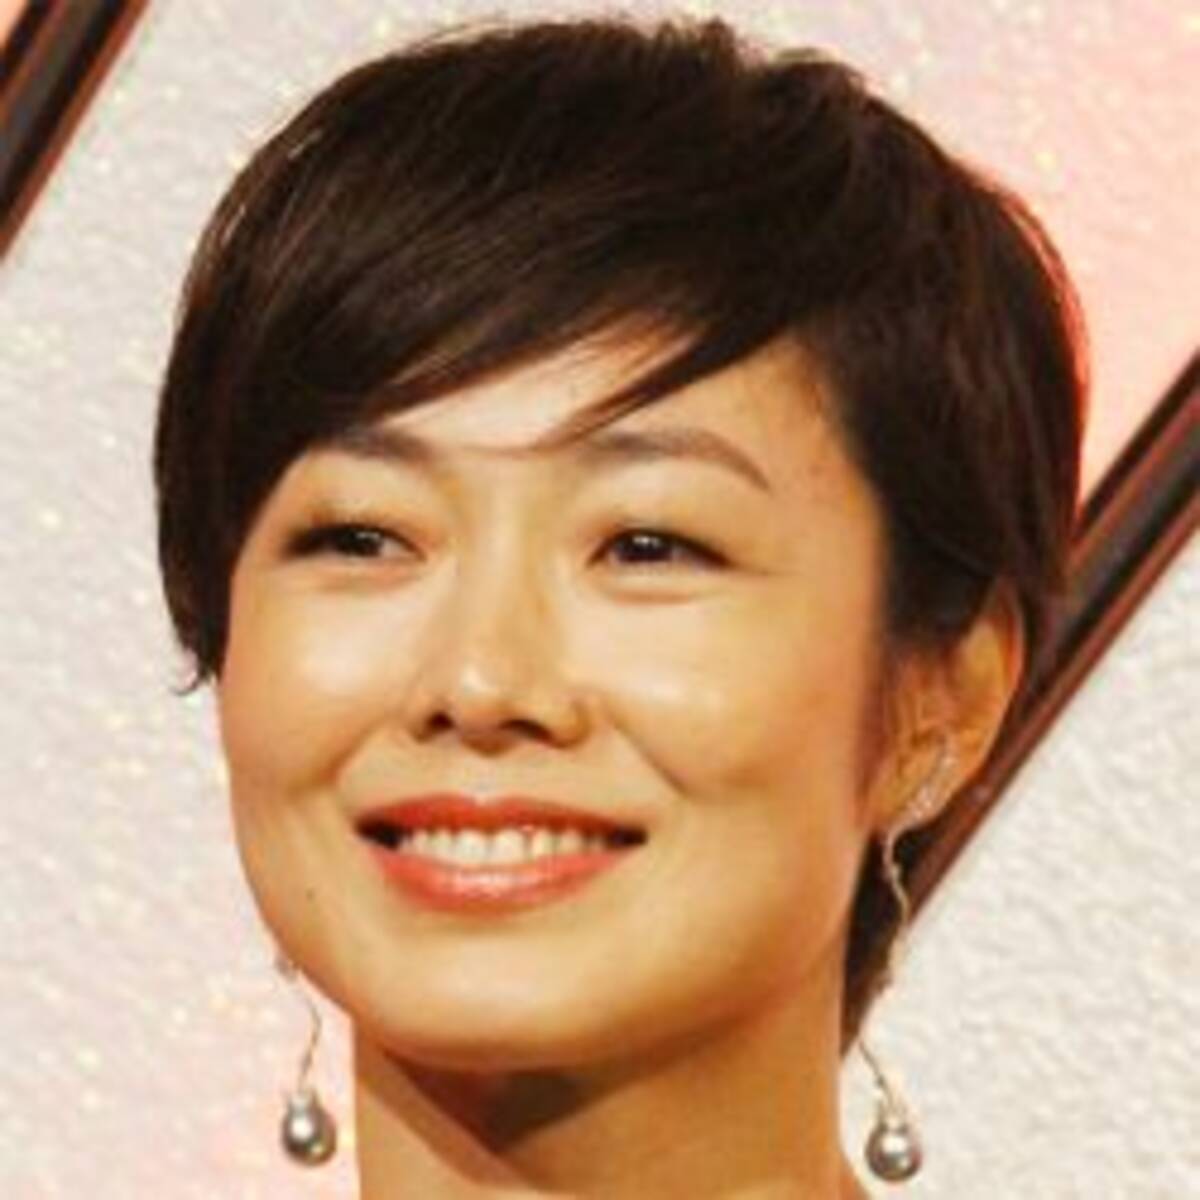 49歳の有働由美子アナが実年齢より10歳若く見える理由 18年4月9日 エキサイトニュース